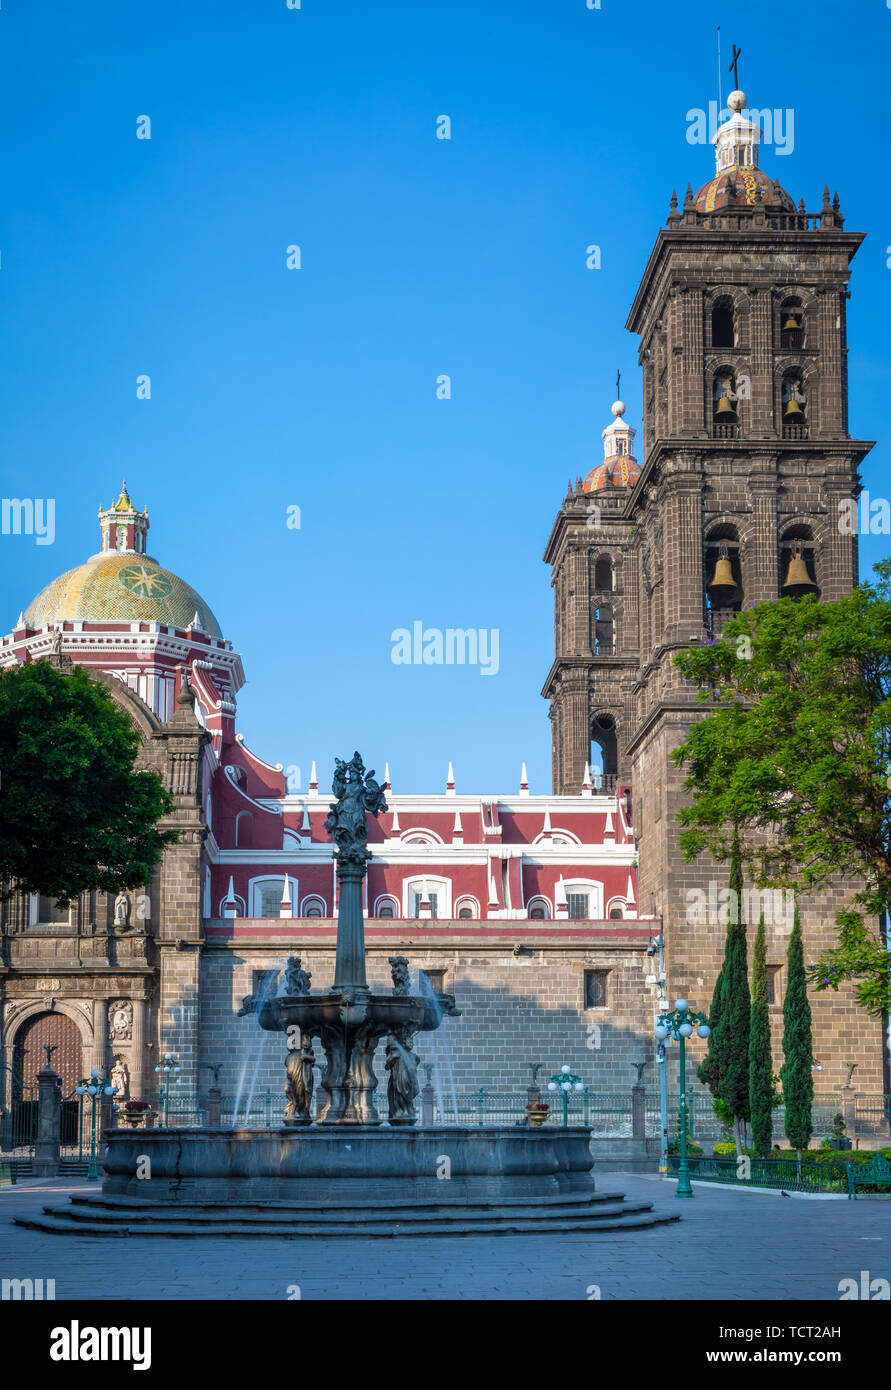 Cattedrale di Puebla è una chiesa cattolica romana nella città di Puebla, nello stato di Puebla, Messico. Si tratta di una Cattedrale coloniale ed è la sede del Foto Stock